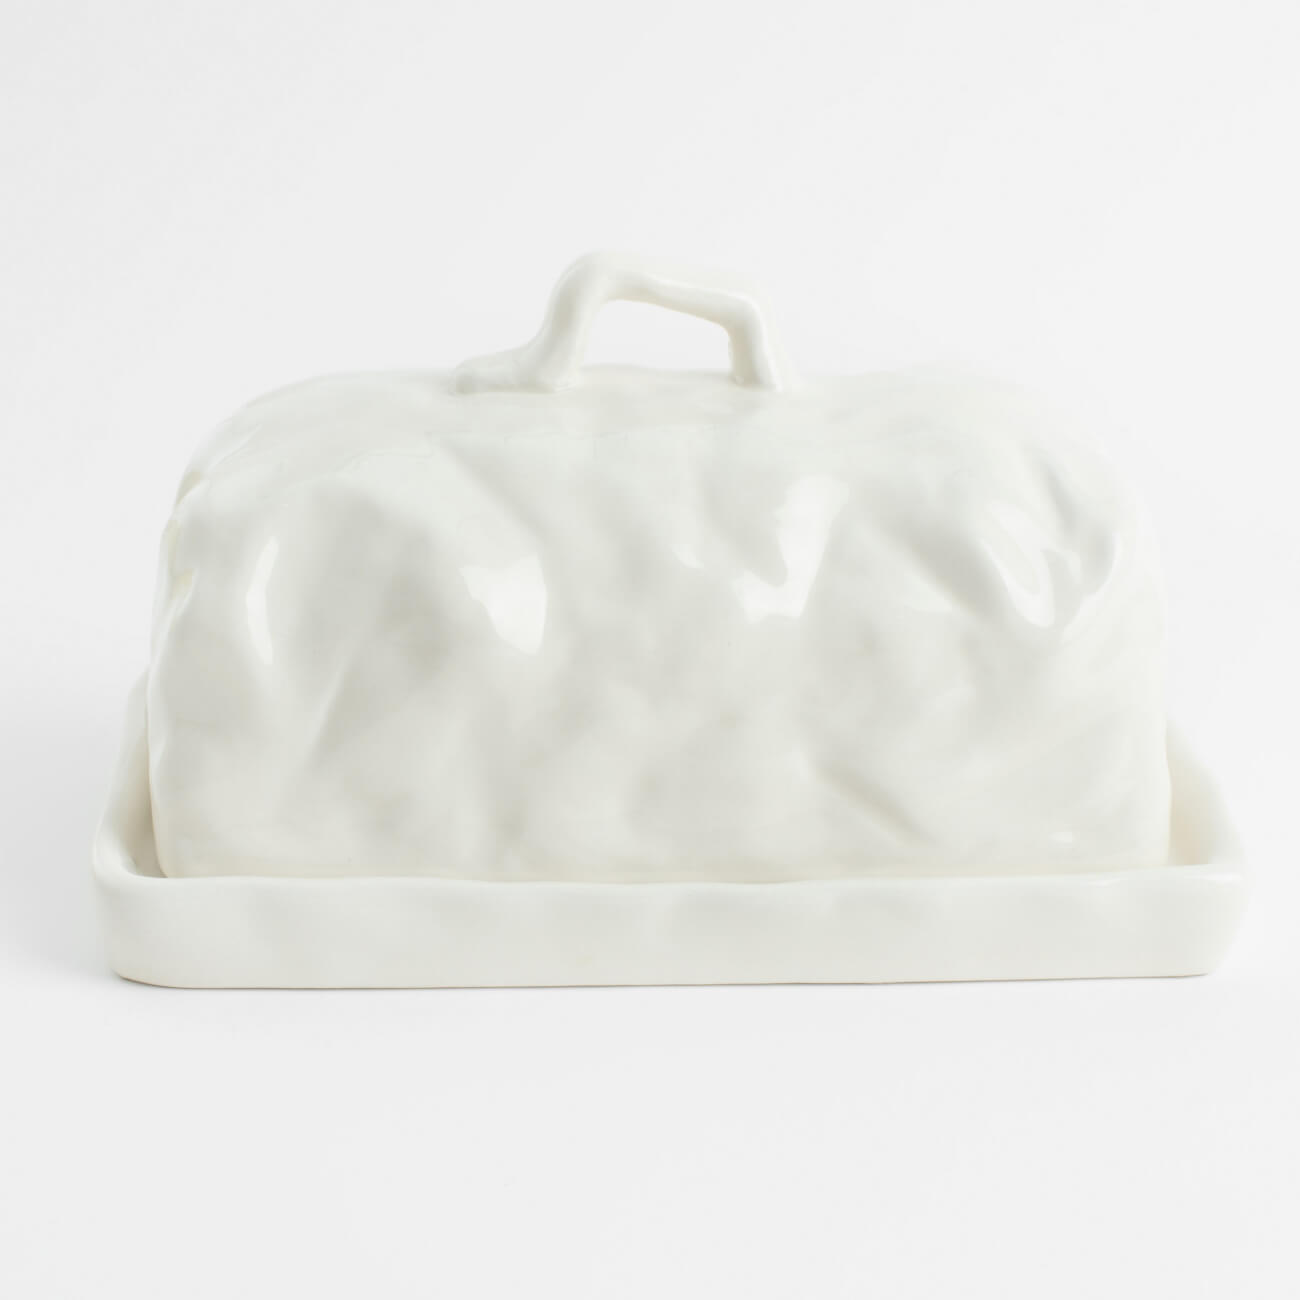 Масленка, 18 см, керамика, прямоугольная, молочная, Мятый эффект, Crumple блюдо декоративное 17 см керамика молочное мятый эффект crumple